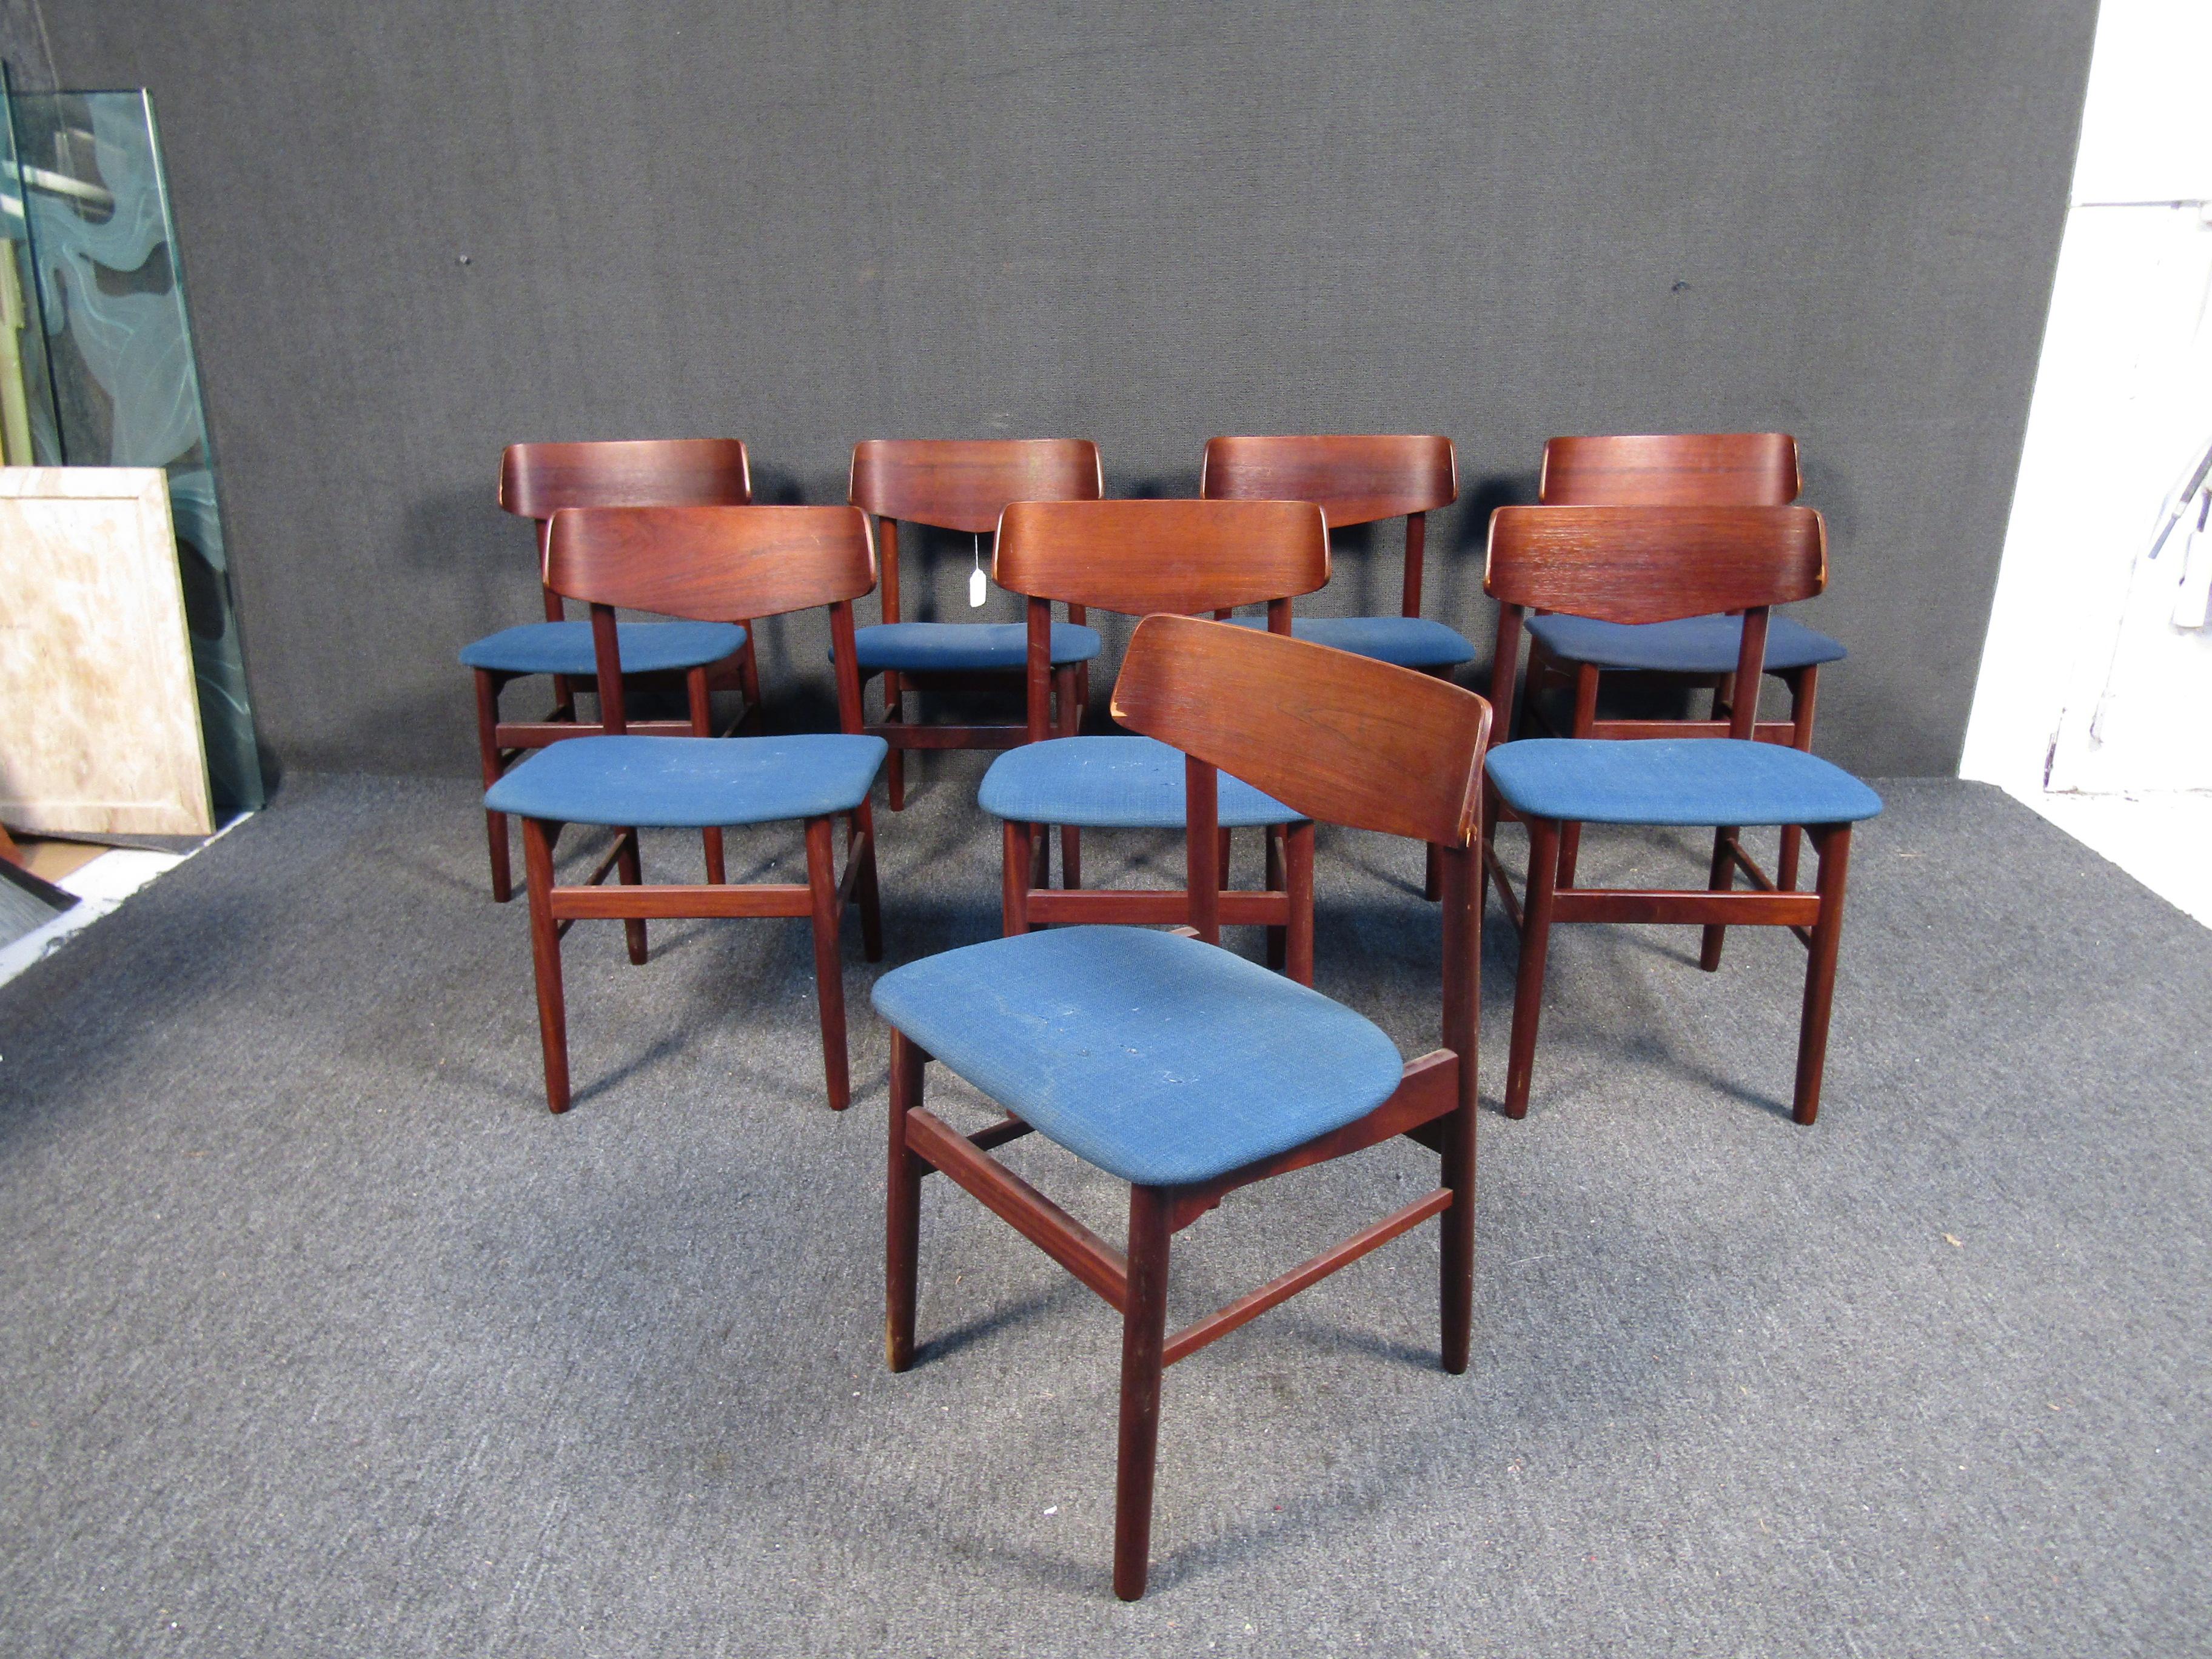 Élégant ensemble de 8 chaises à manger de style moderne danois. Ces chaises sont dotées de dossiers profilés, de pieds effilés et de sièges rembourrés bleus. Ces chaises s'intègrent parfaitement au décor de tout intérieur moderne. 

Veuillez